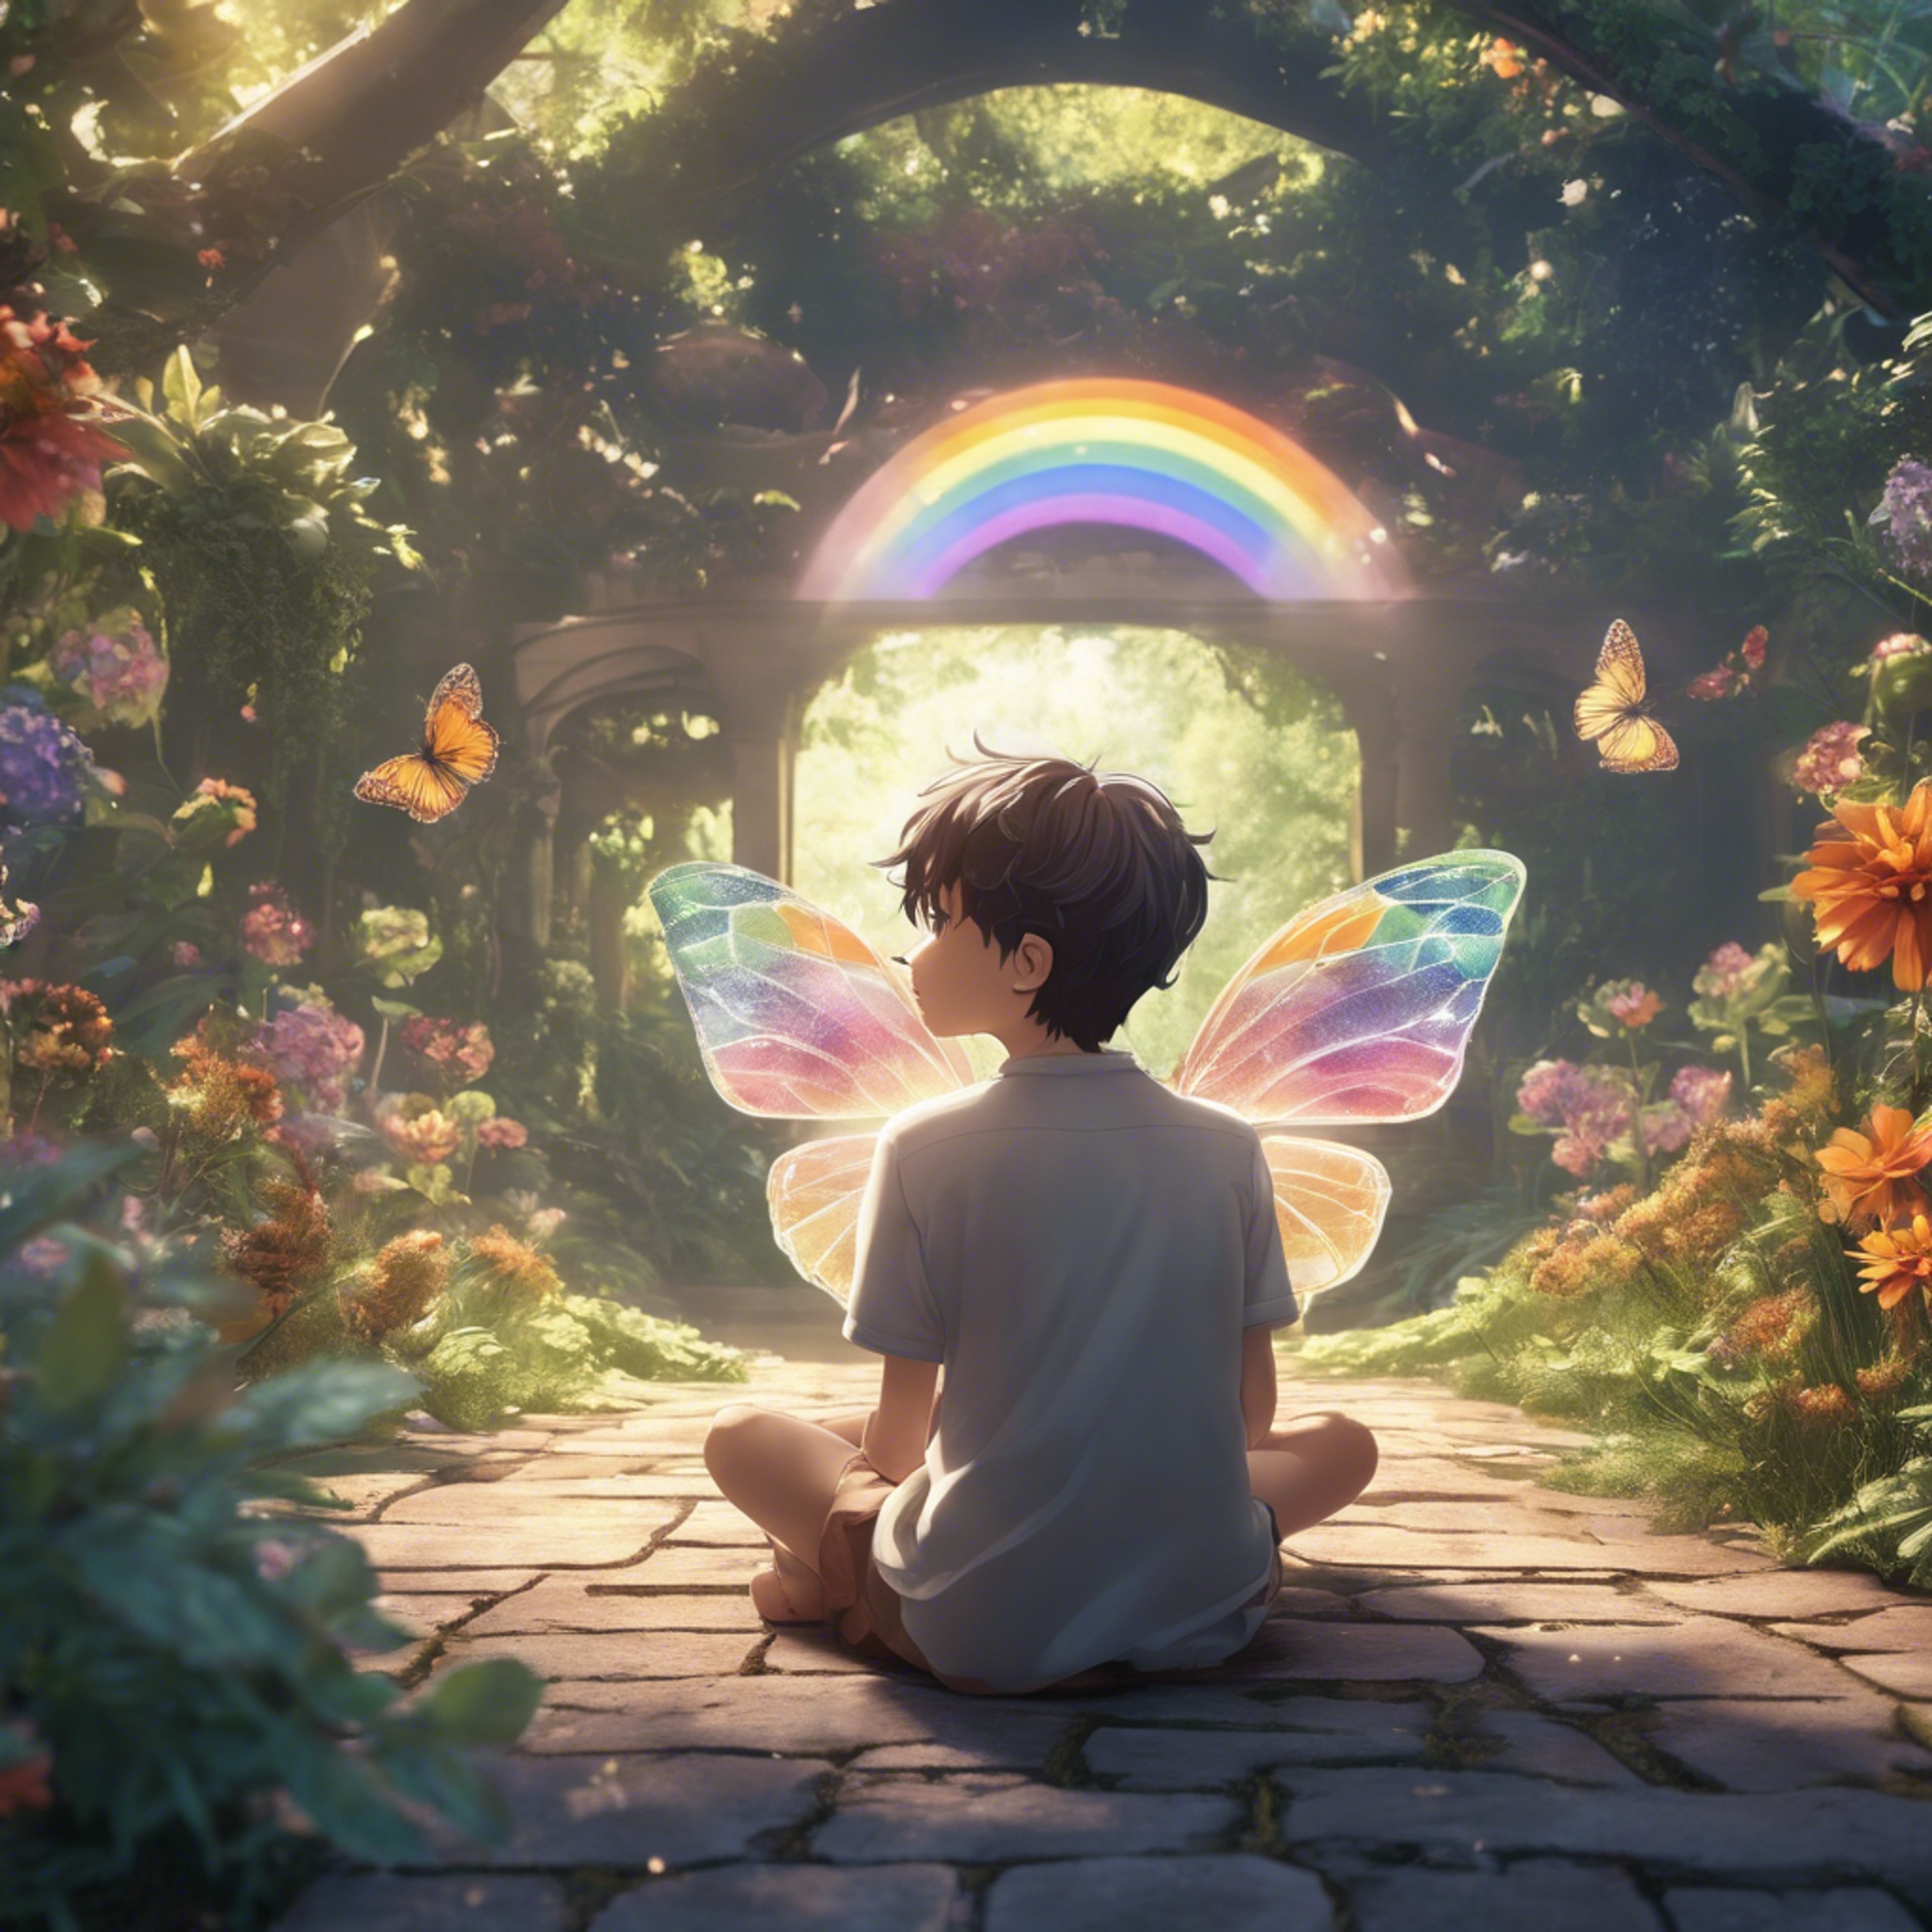 An innocent anime boy with rainbow wings gazing at a butterfly in a hidden garden. duvar kağıdı[04bec09c0c034ff9b0e5]